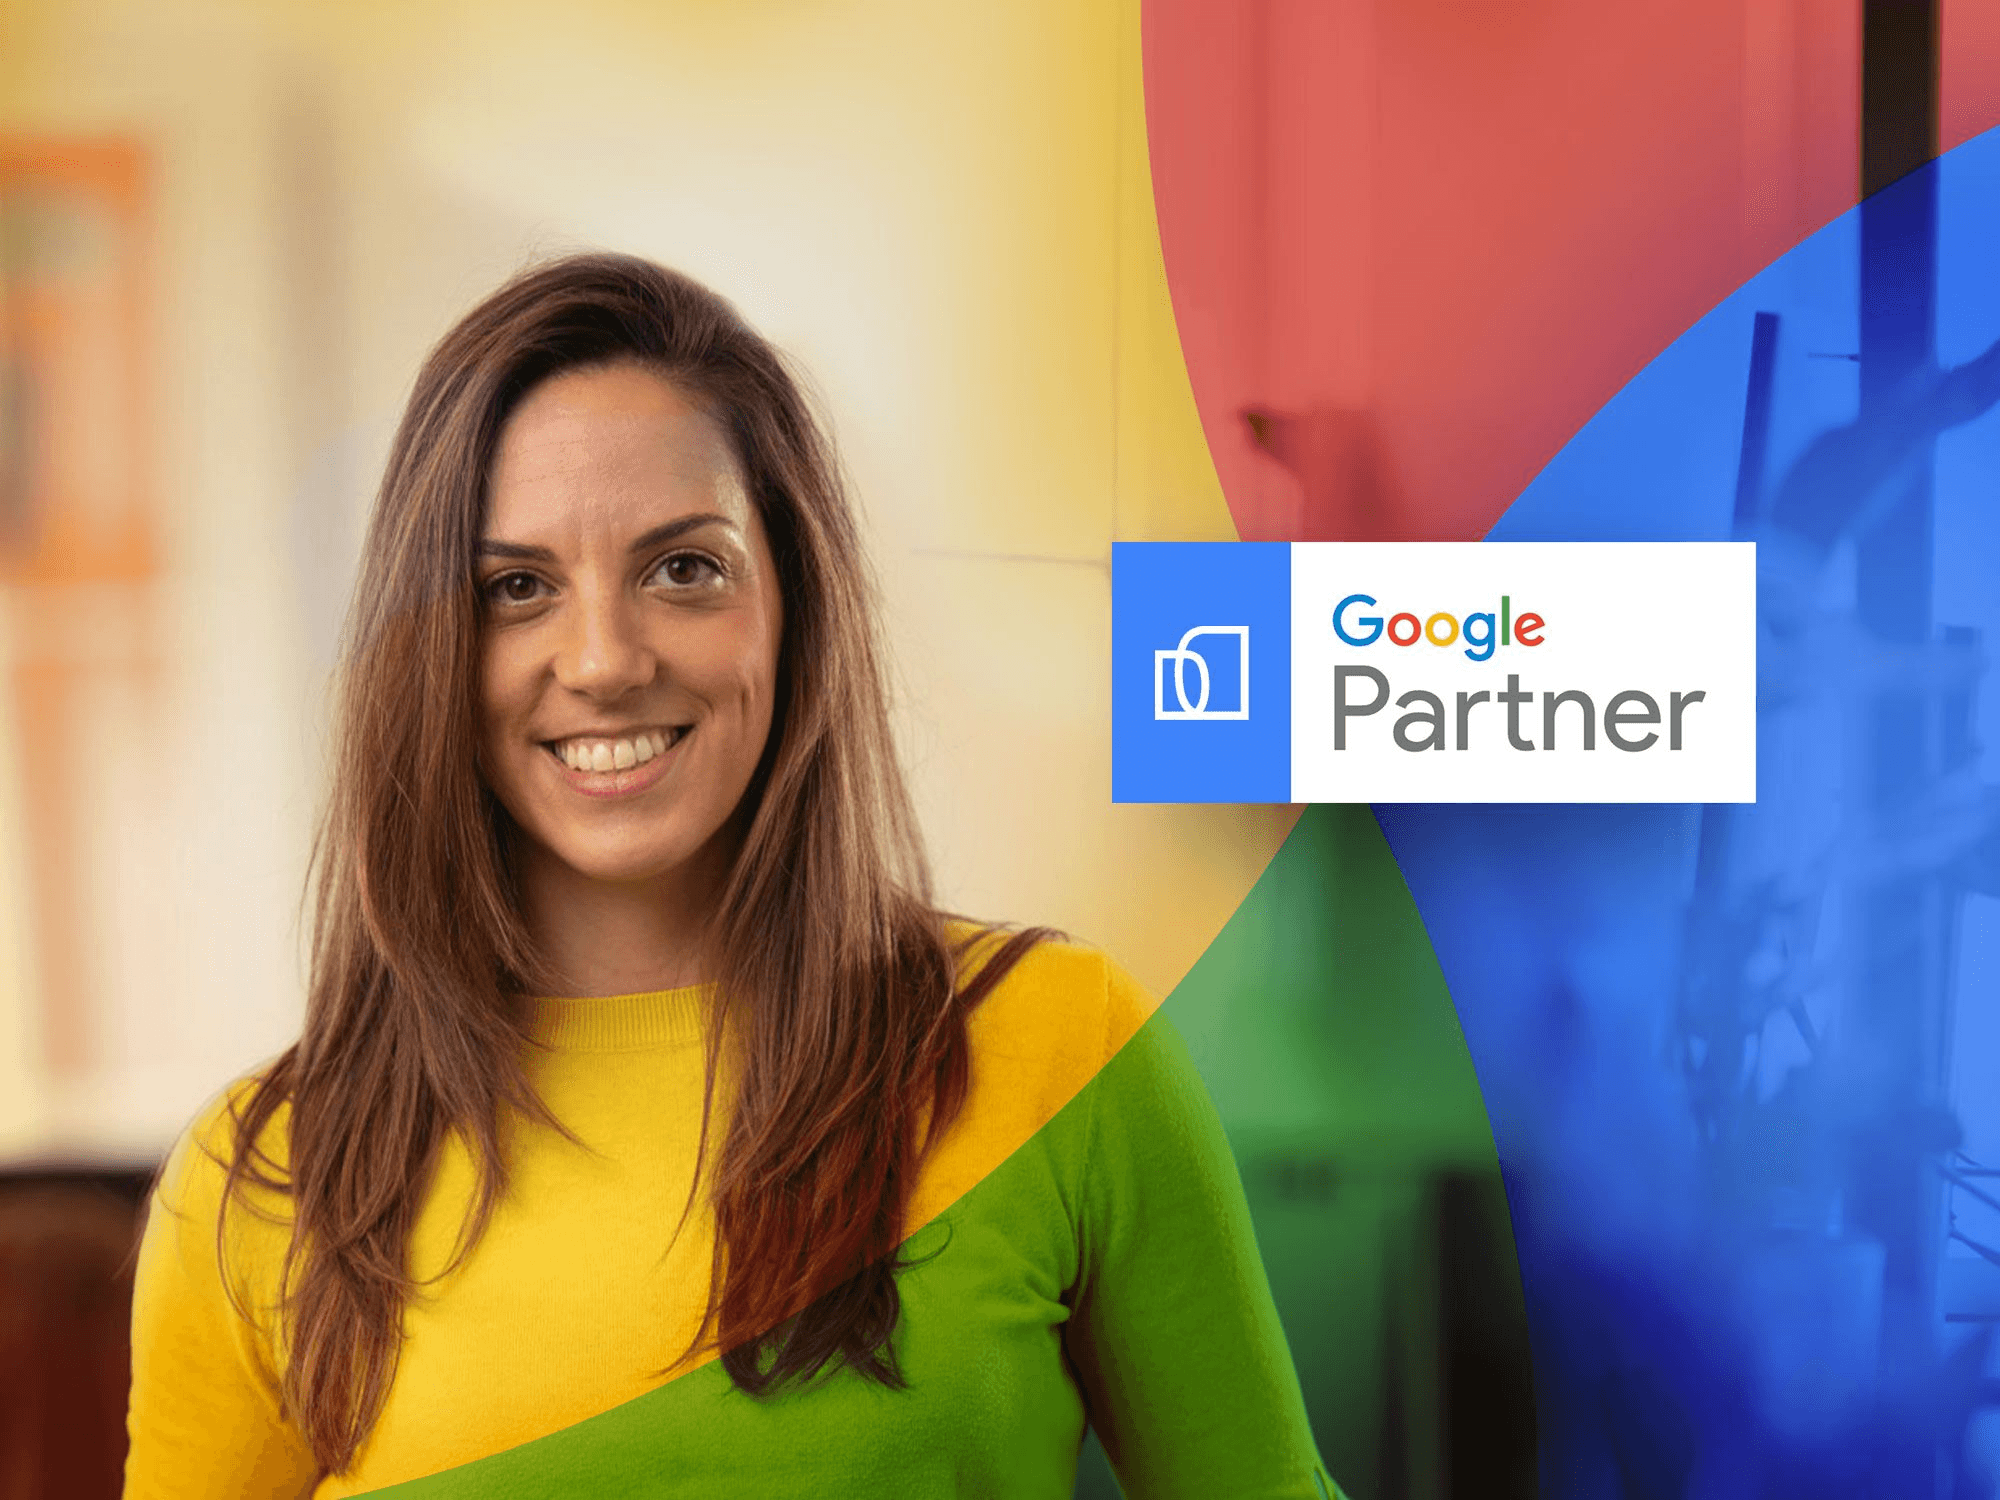 Professionnelle certifiée Google Partner, responsable de campagnes publicitaires payantes